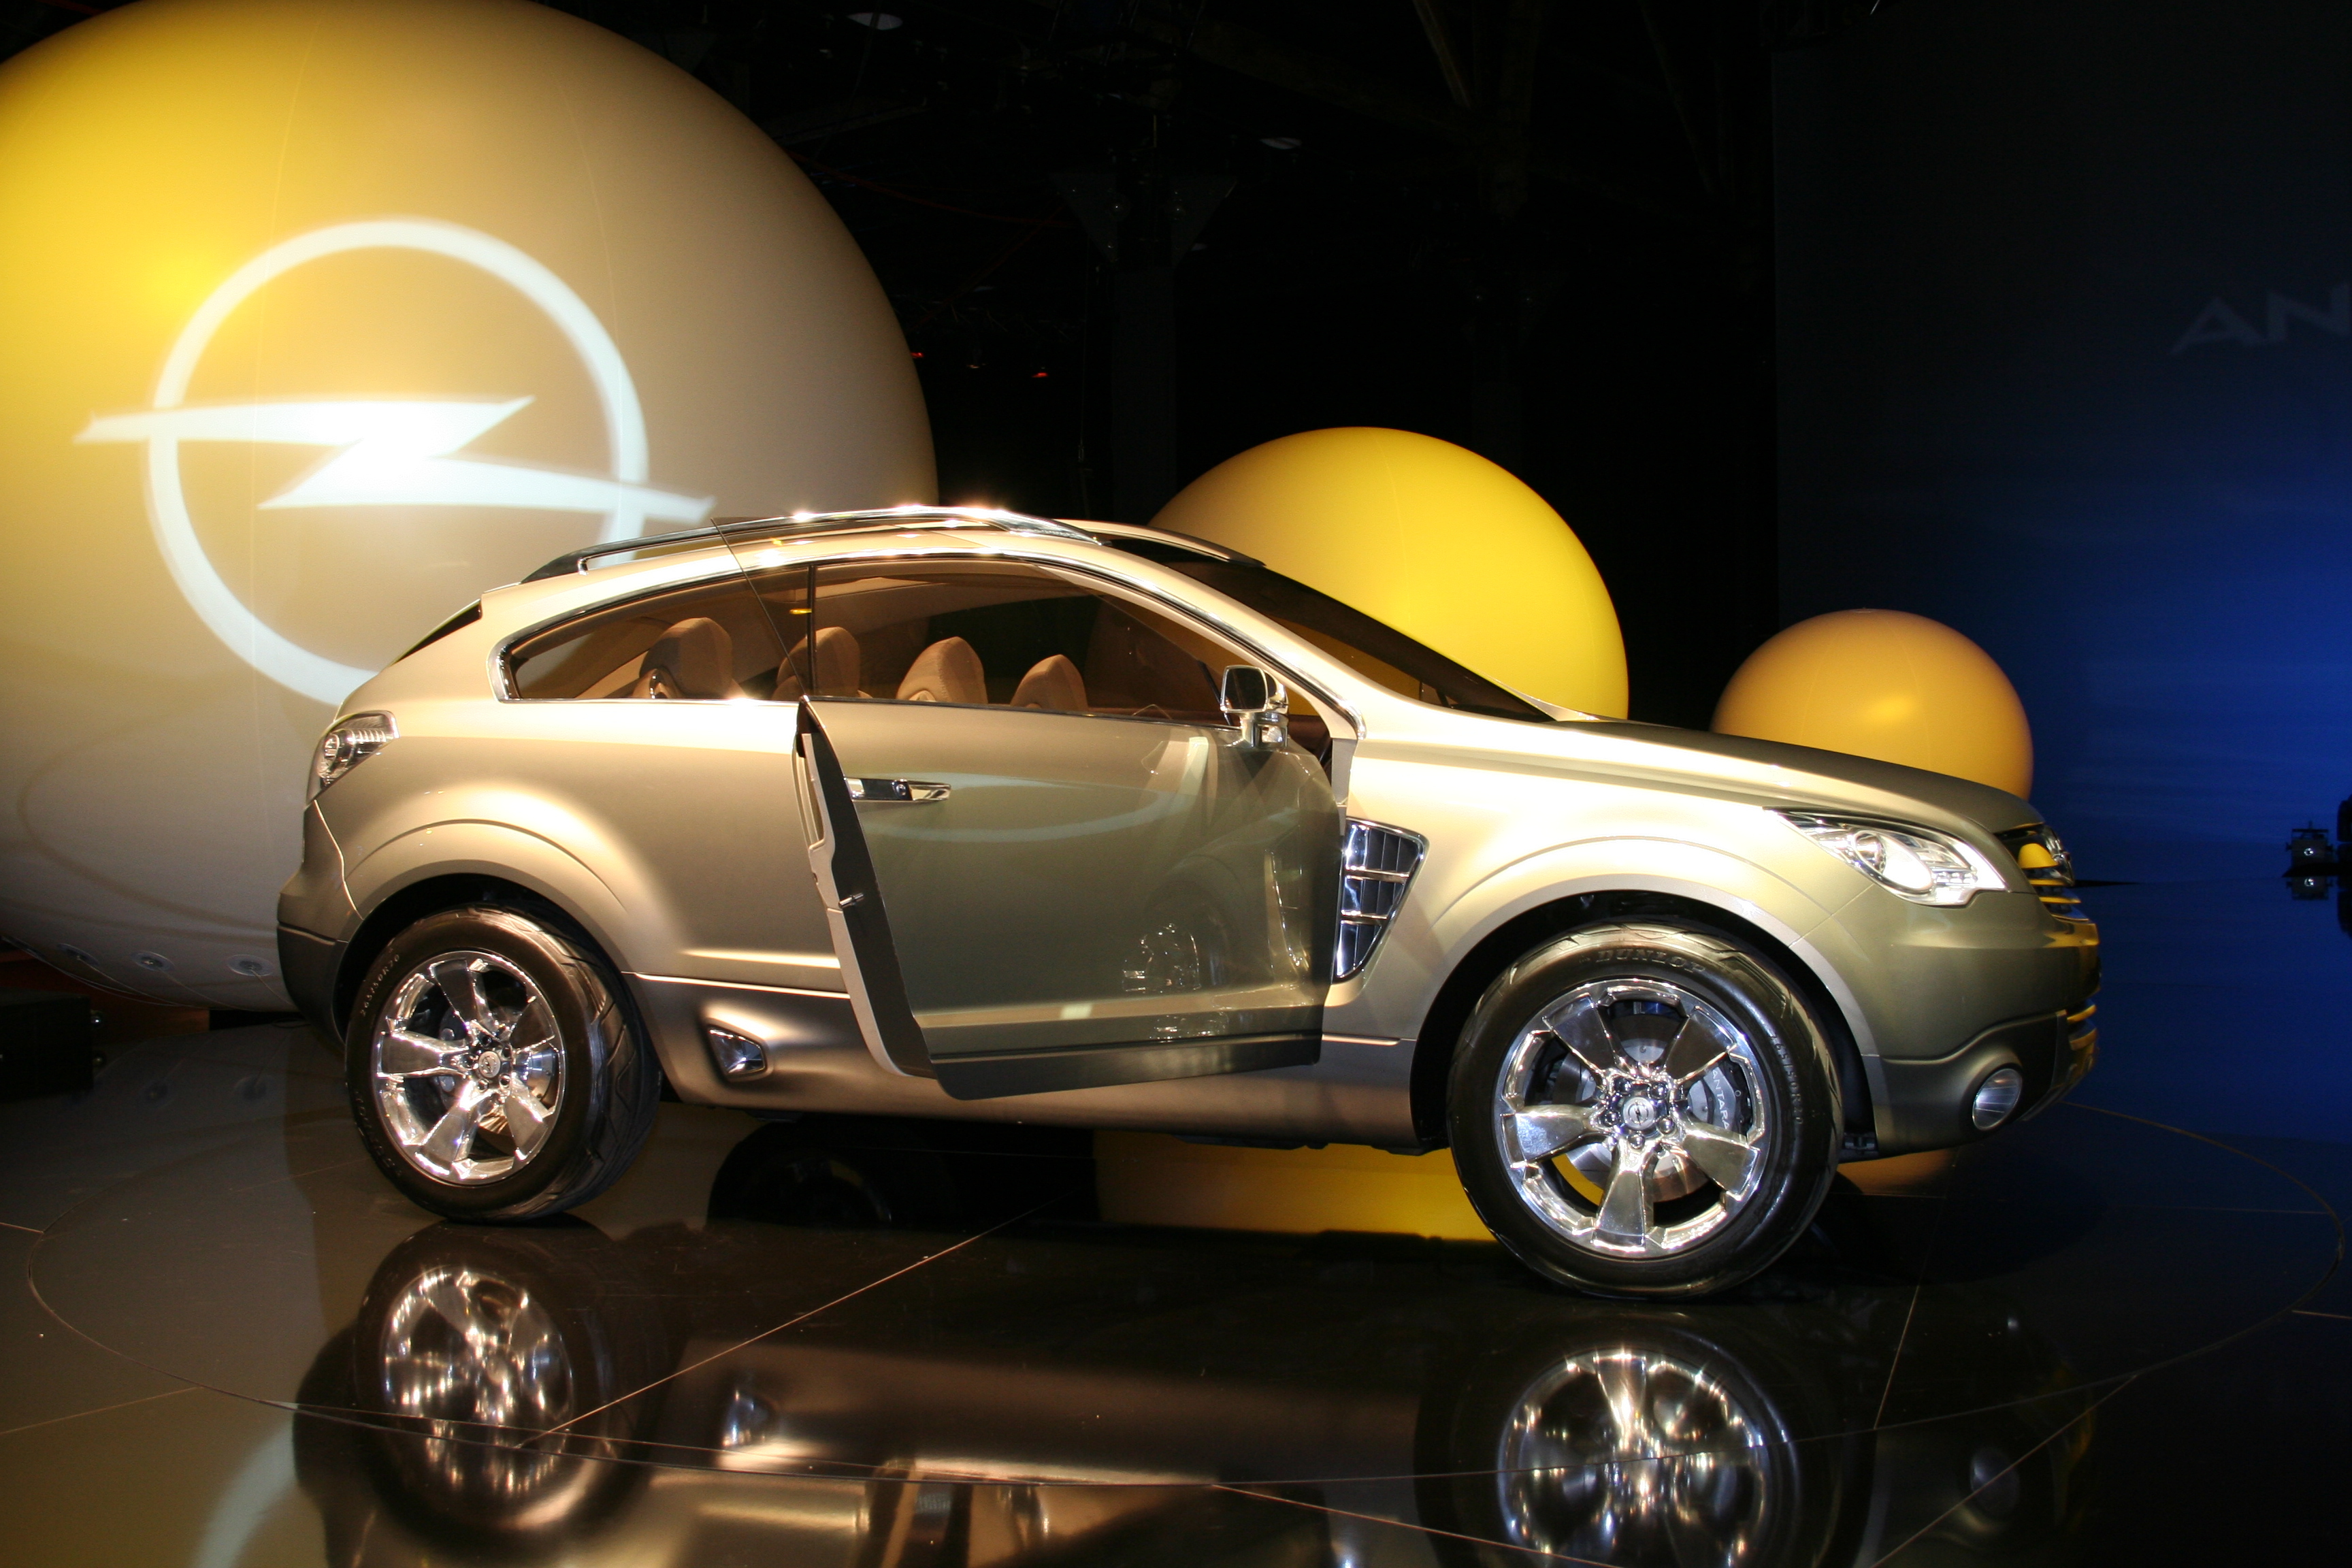 Opel Antara GTC Reveal Film The Fantasy Ride